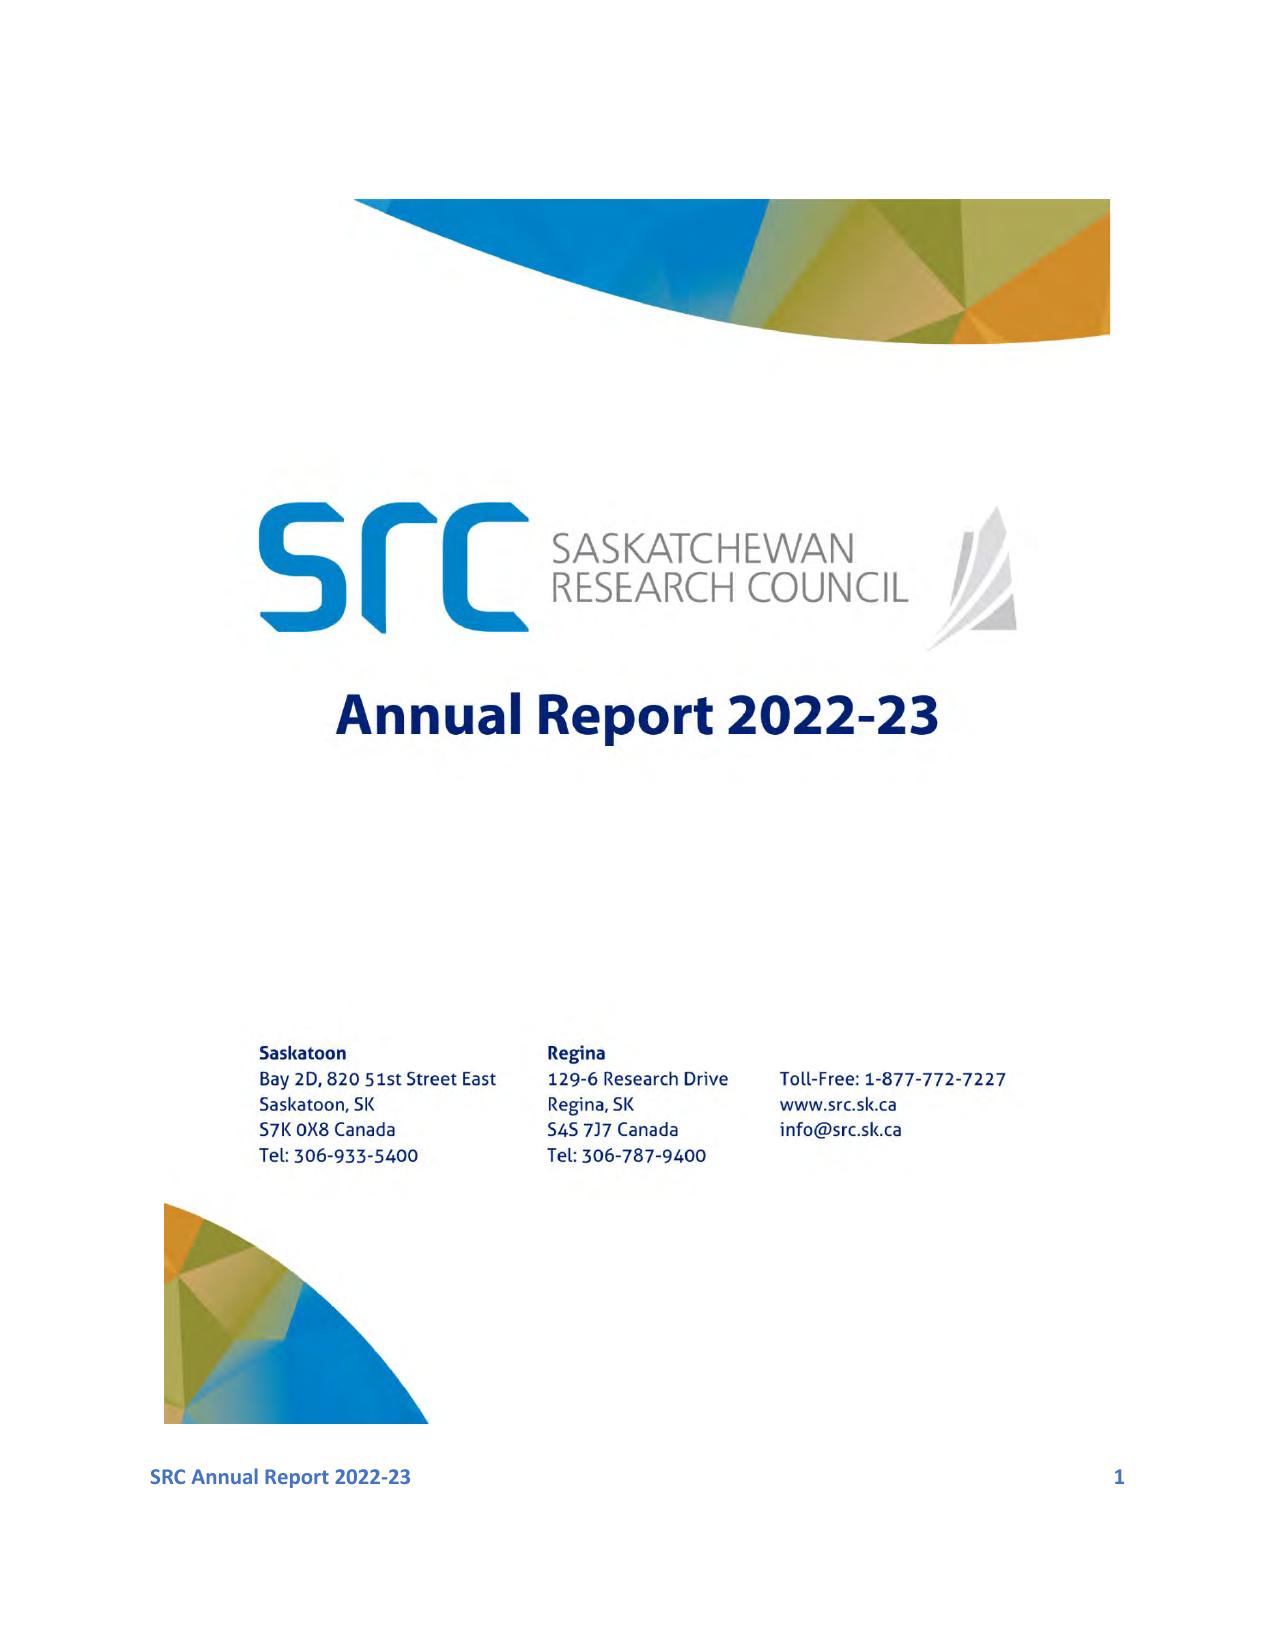 CANADAGOLD 2022 Annual Report